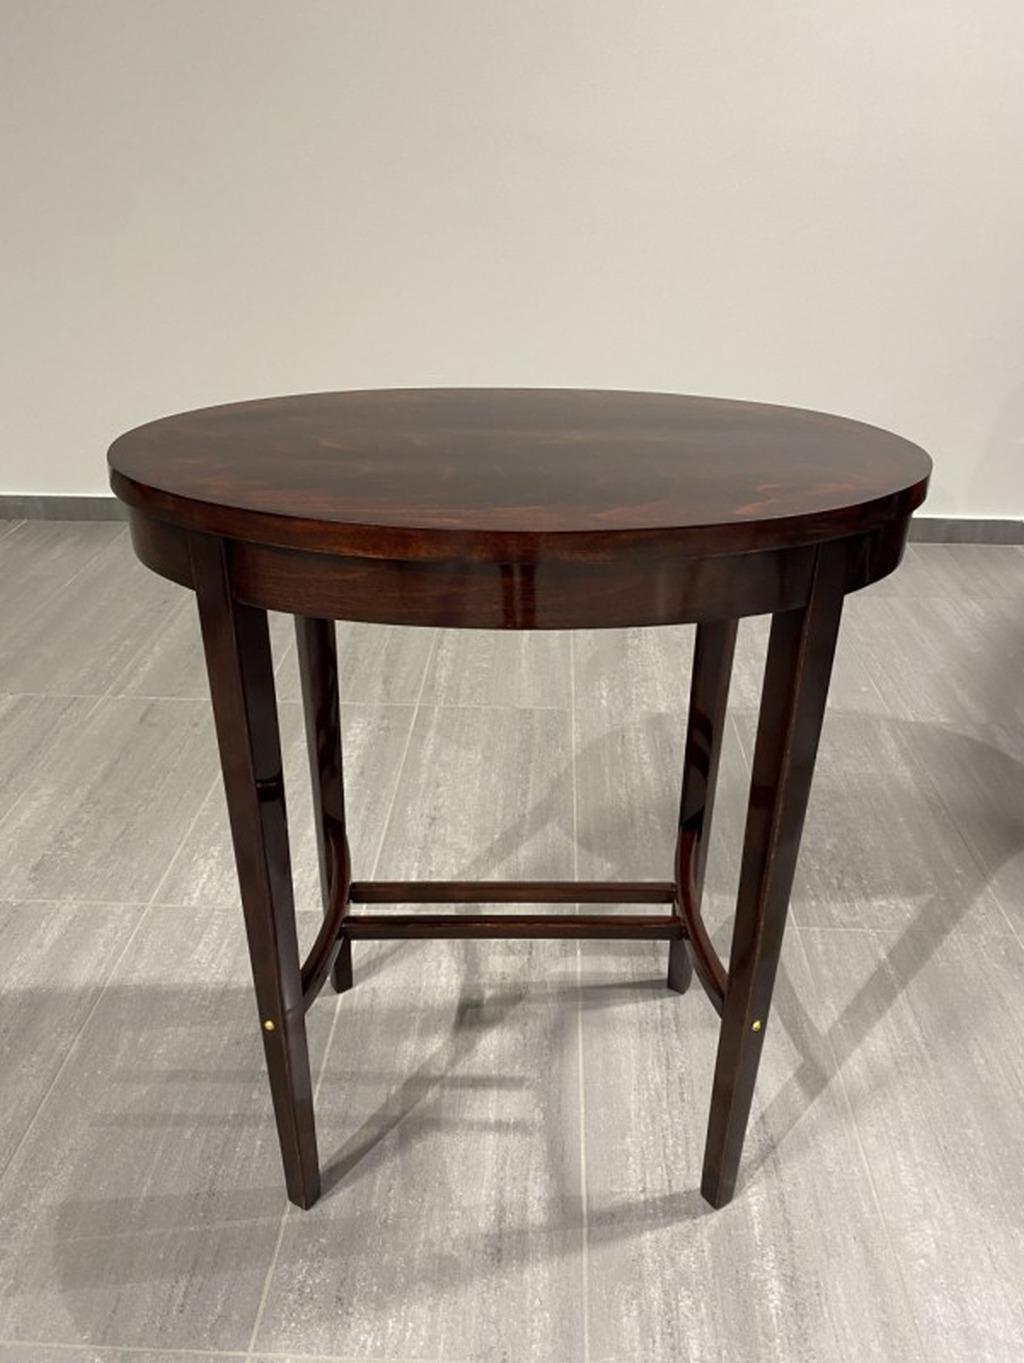 Ovaler Tisch von Josef Hoffmann für die Wiener Werkstätte. Professionell gebeizt und neu poliert.